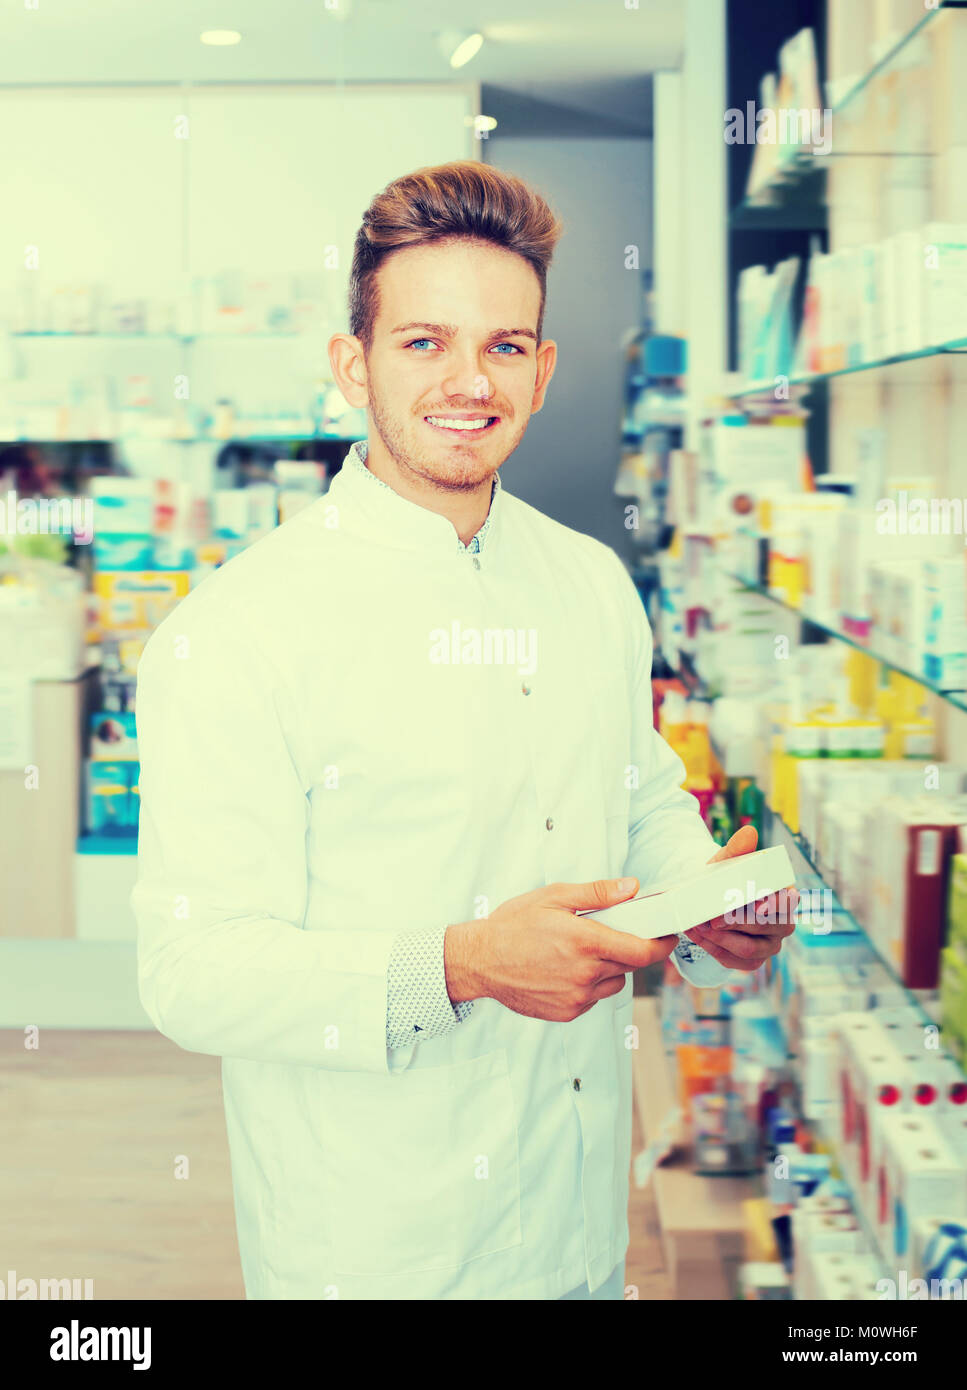 Adult man pharmacist wearing white coat standing among shelves in drug ...